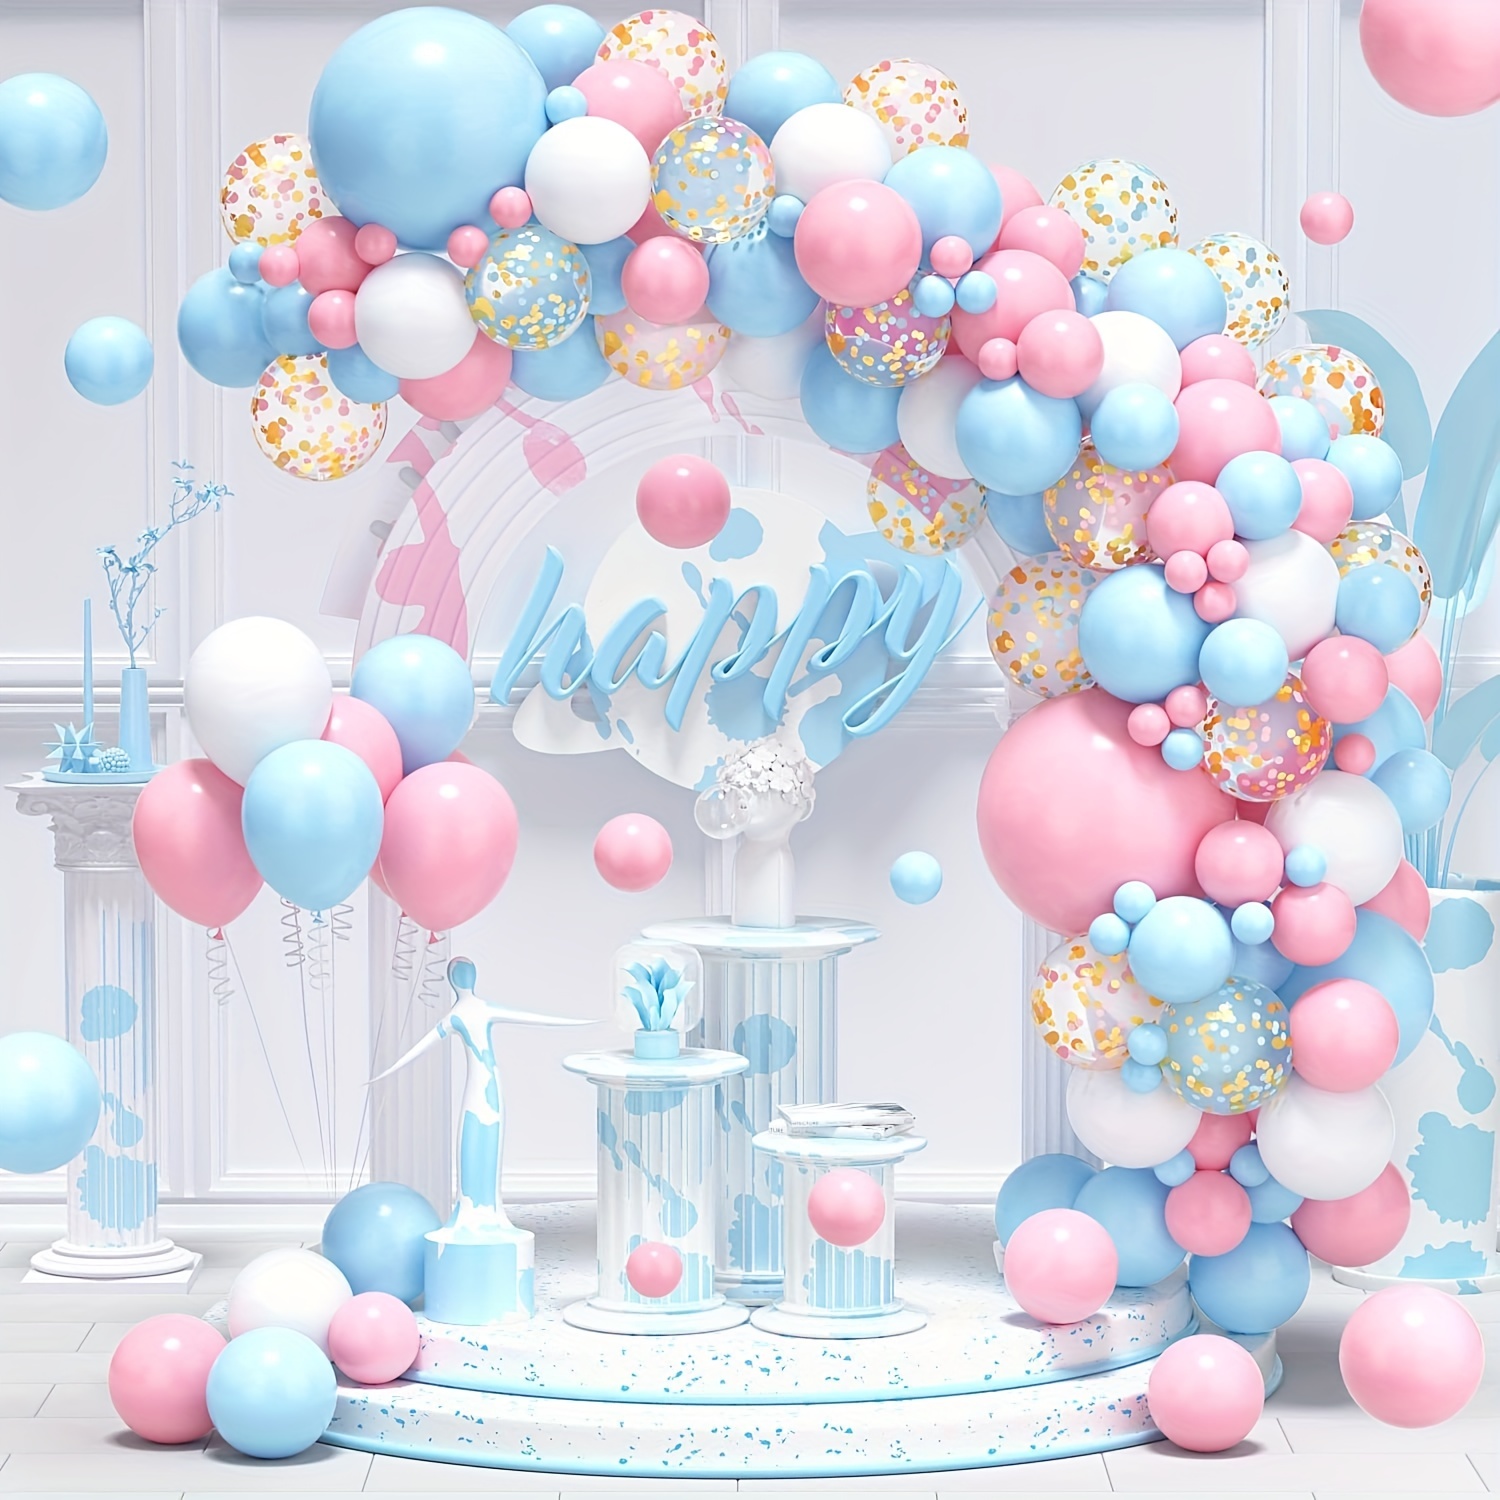 Kit de arco de globos azul y rosa / Kit de revelación de género / Perfecto  para baby shower / Decoraciones de cumpleaños Globo Guirnalda -  España